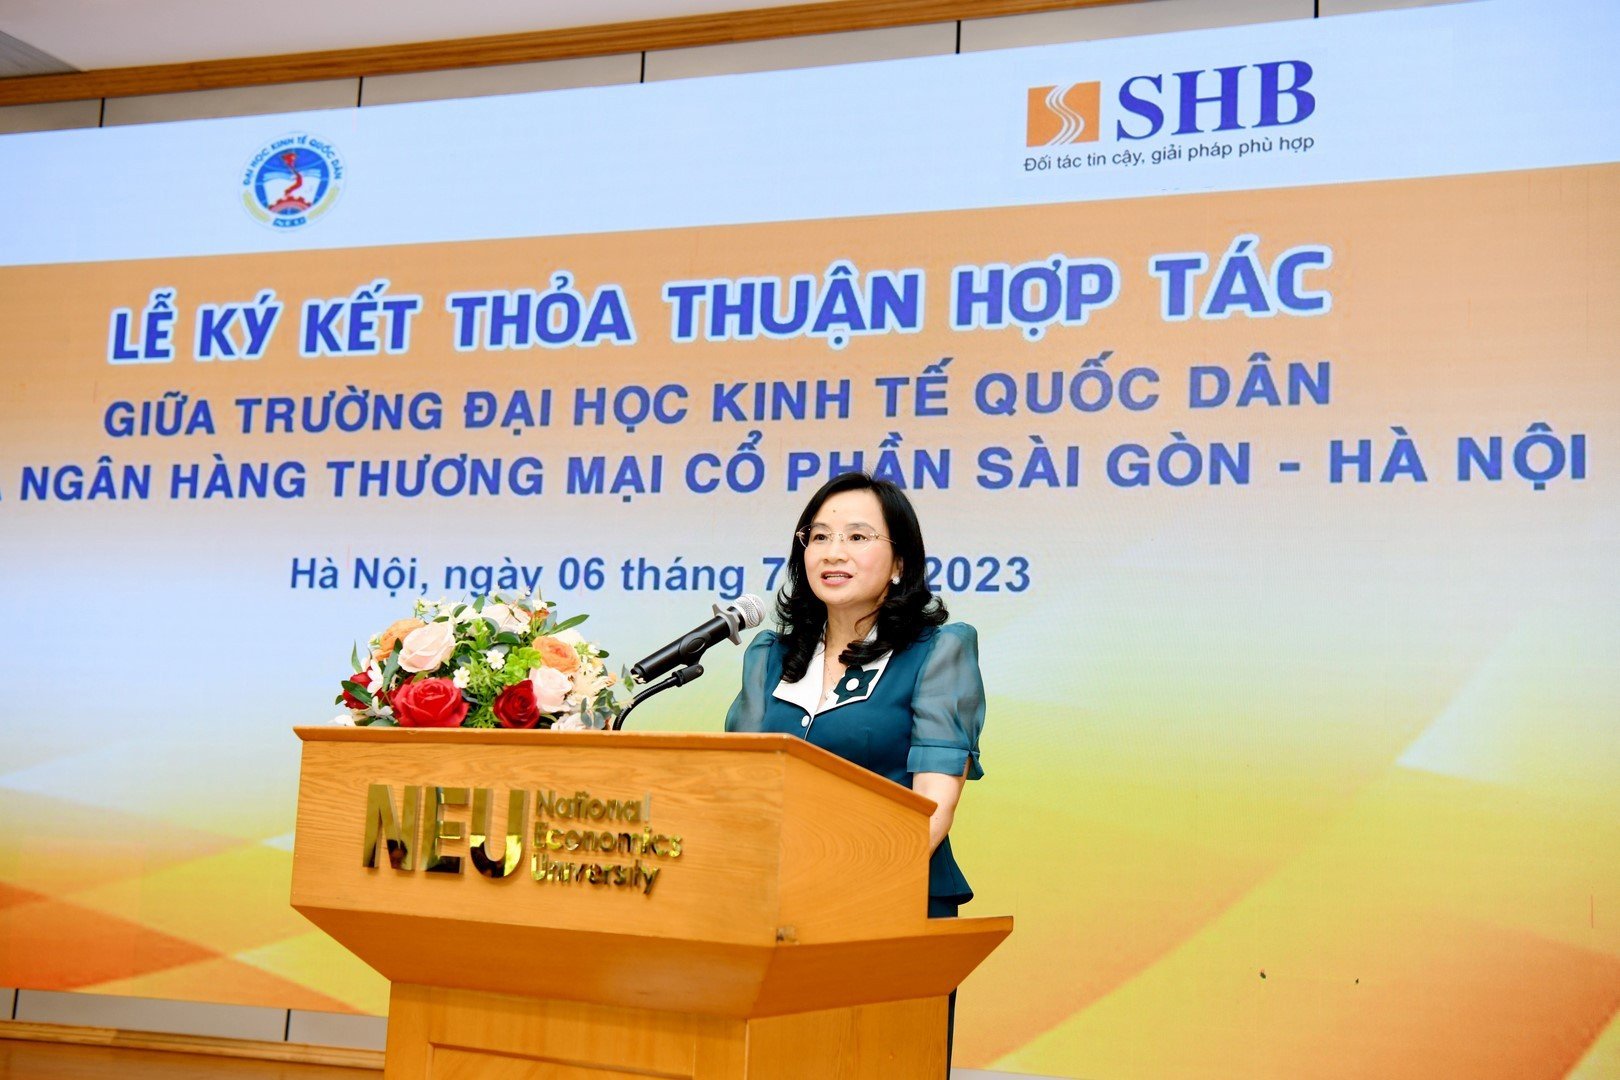 Tổng Giám đốc SHB Ngô Thu Hà hy vọng sẽ đón được nhiều cử nhân tài năng của Trường Đại học KTQD gia nhập đại gia đình SHB